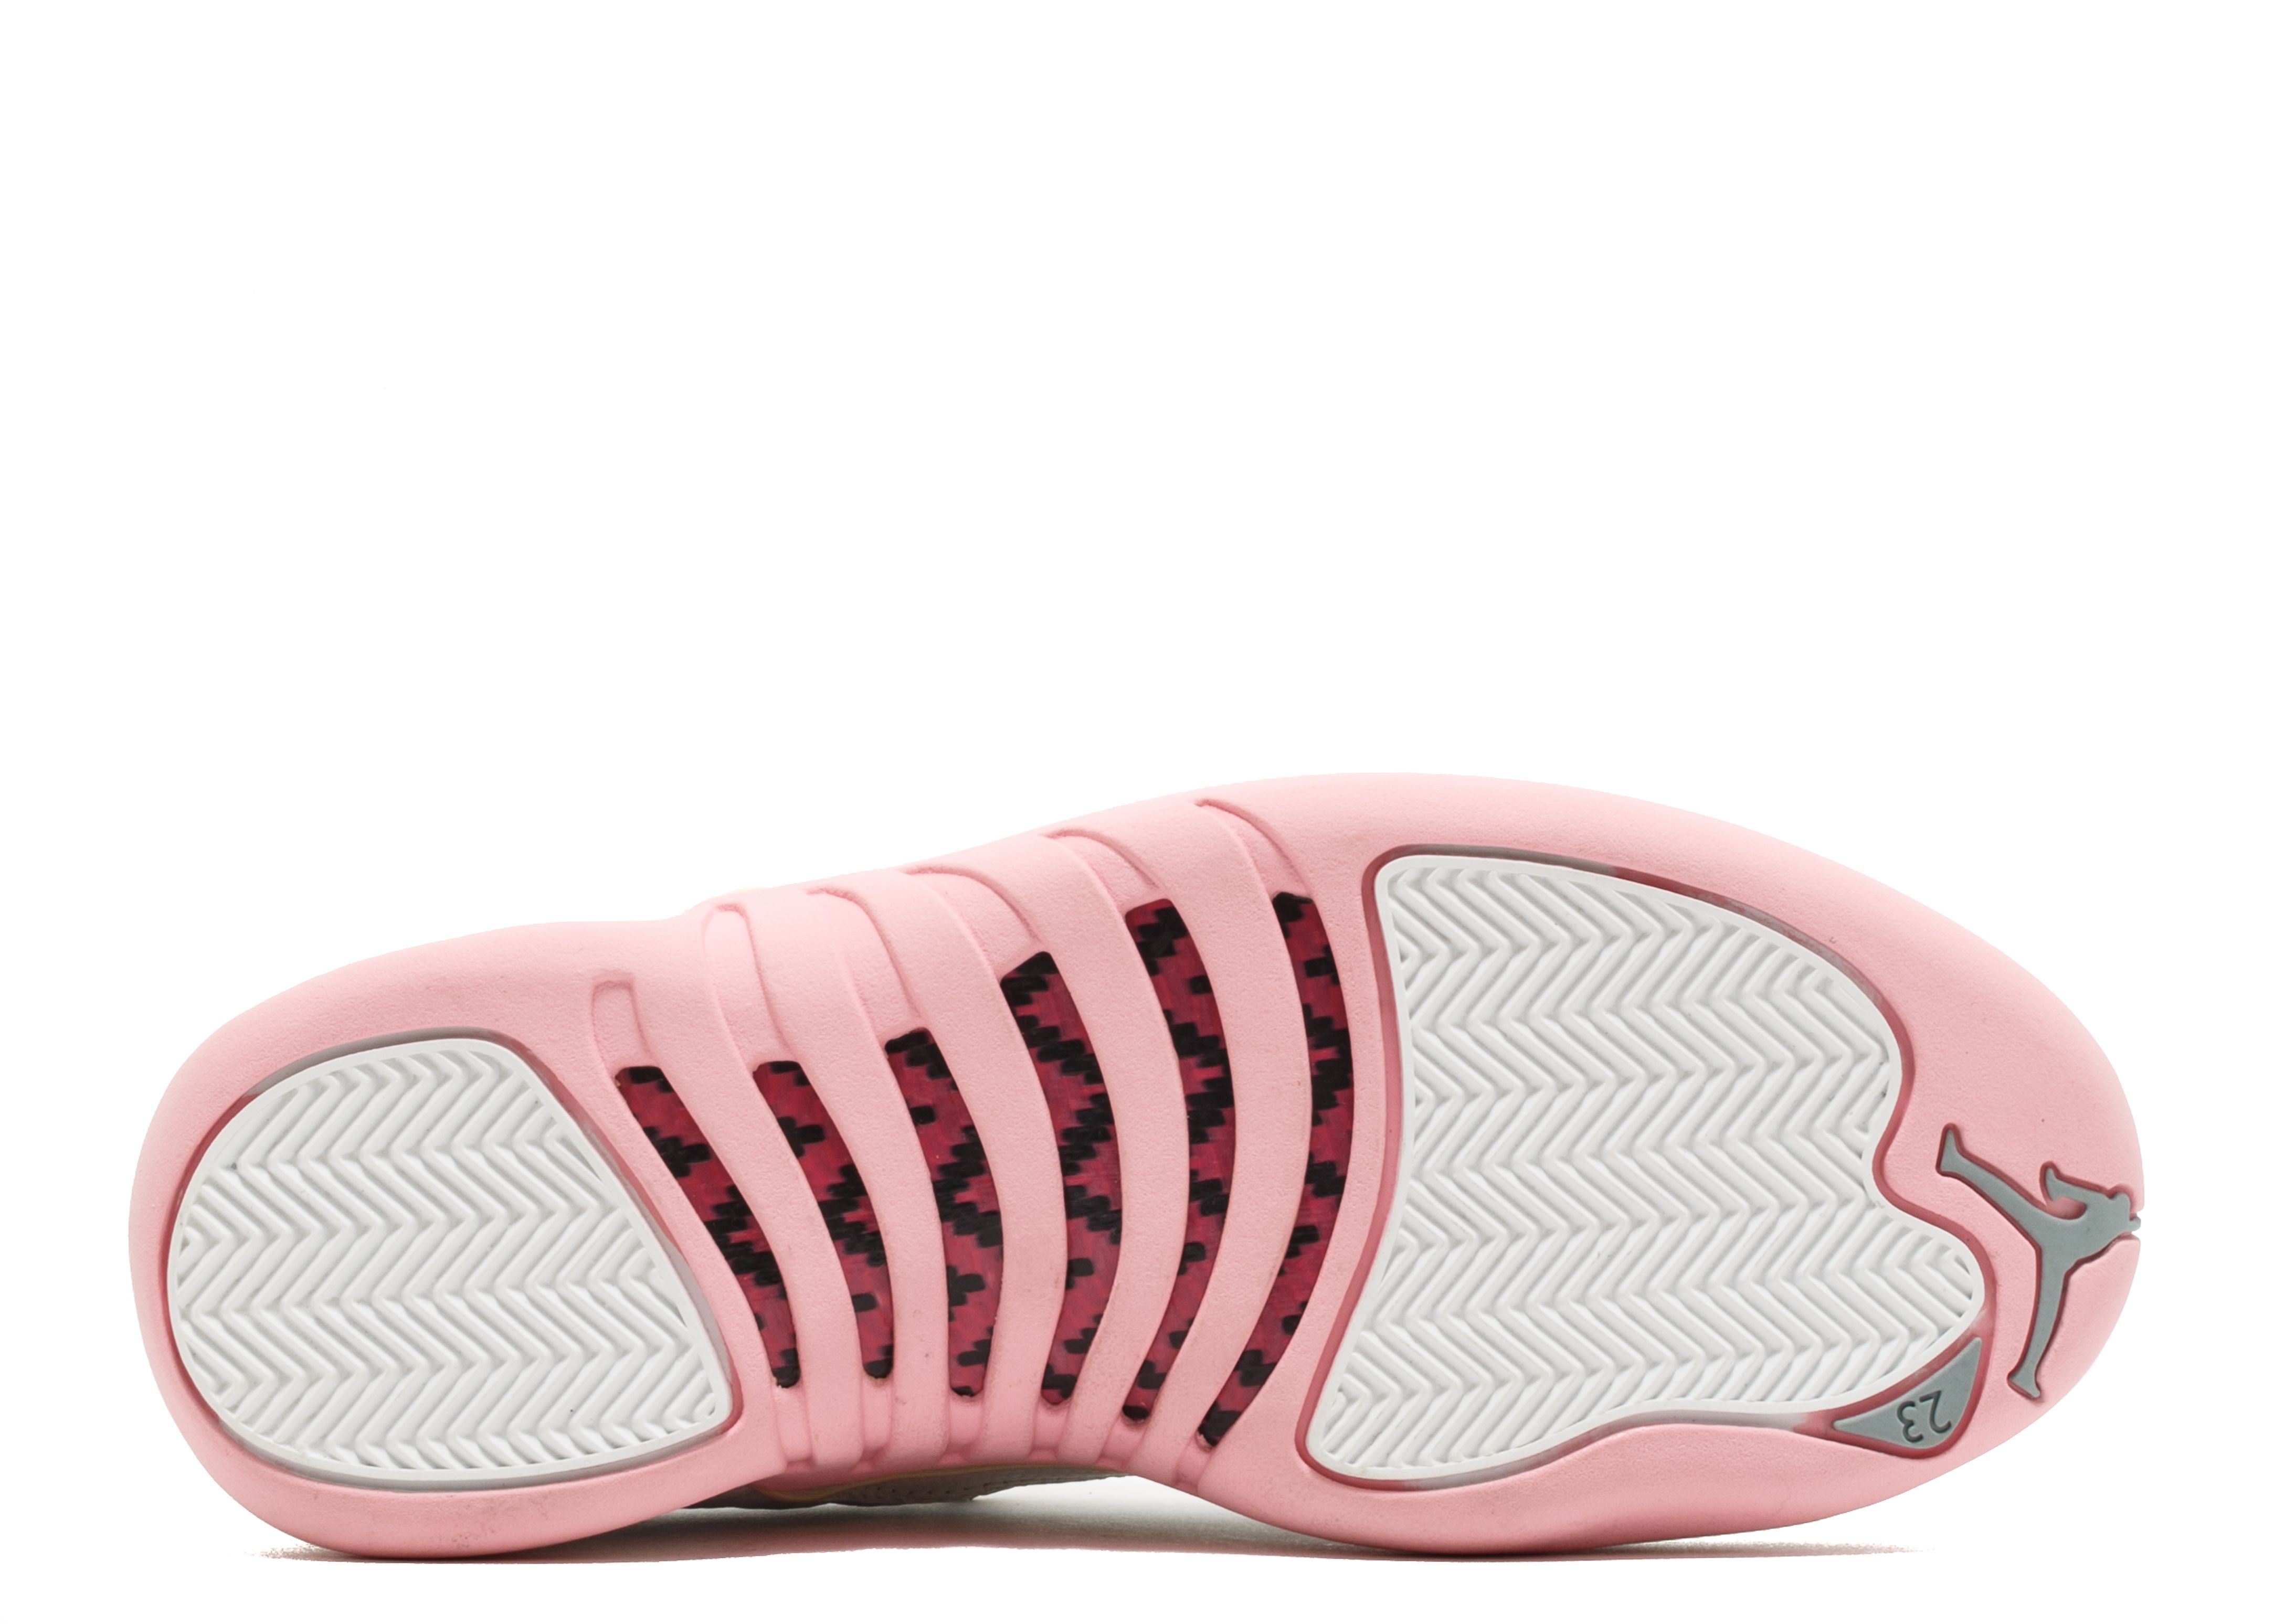 Wmns Air Jordan 12 Retro Low 'Real Pink' - Air Jordan - 308306 161